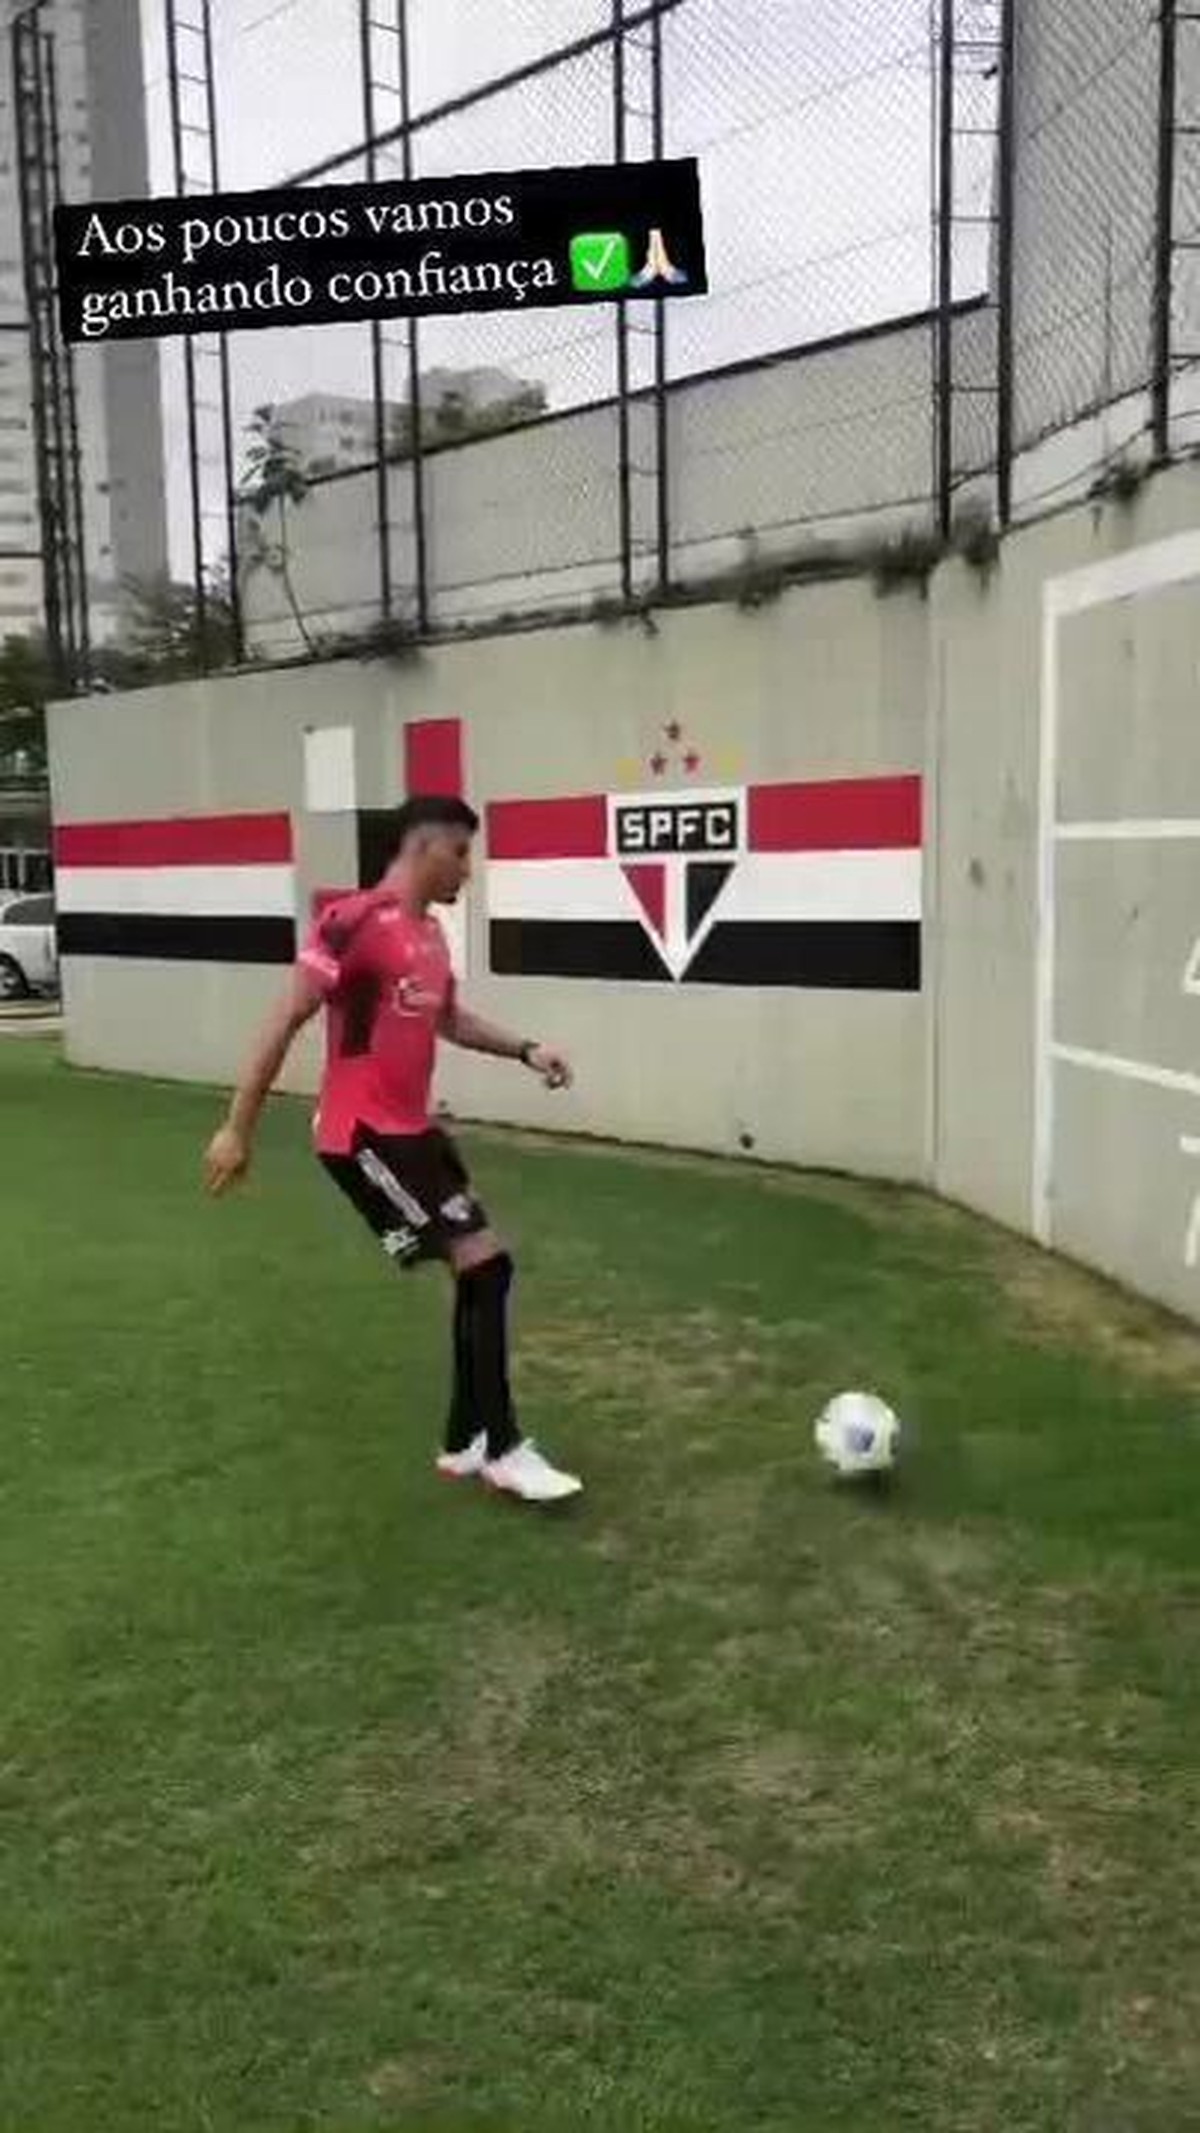 Walce assina renovação com o São Paulo por mais uma temporada, são paulo